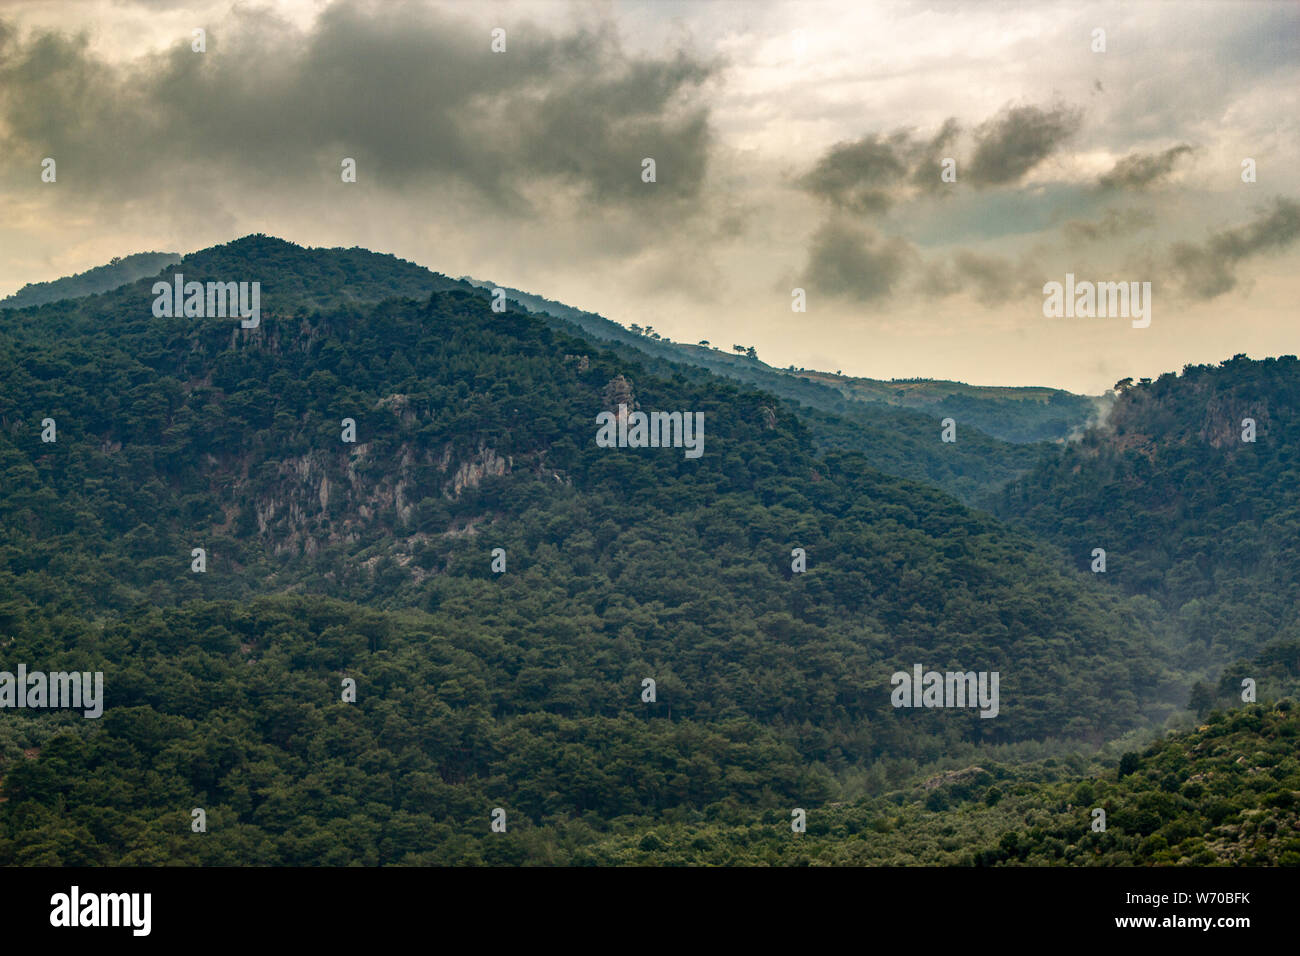 Brumeux et nuageux paysage de forêt montagneuse Banque D'Images